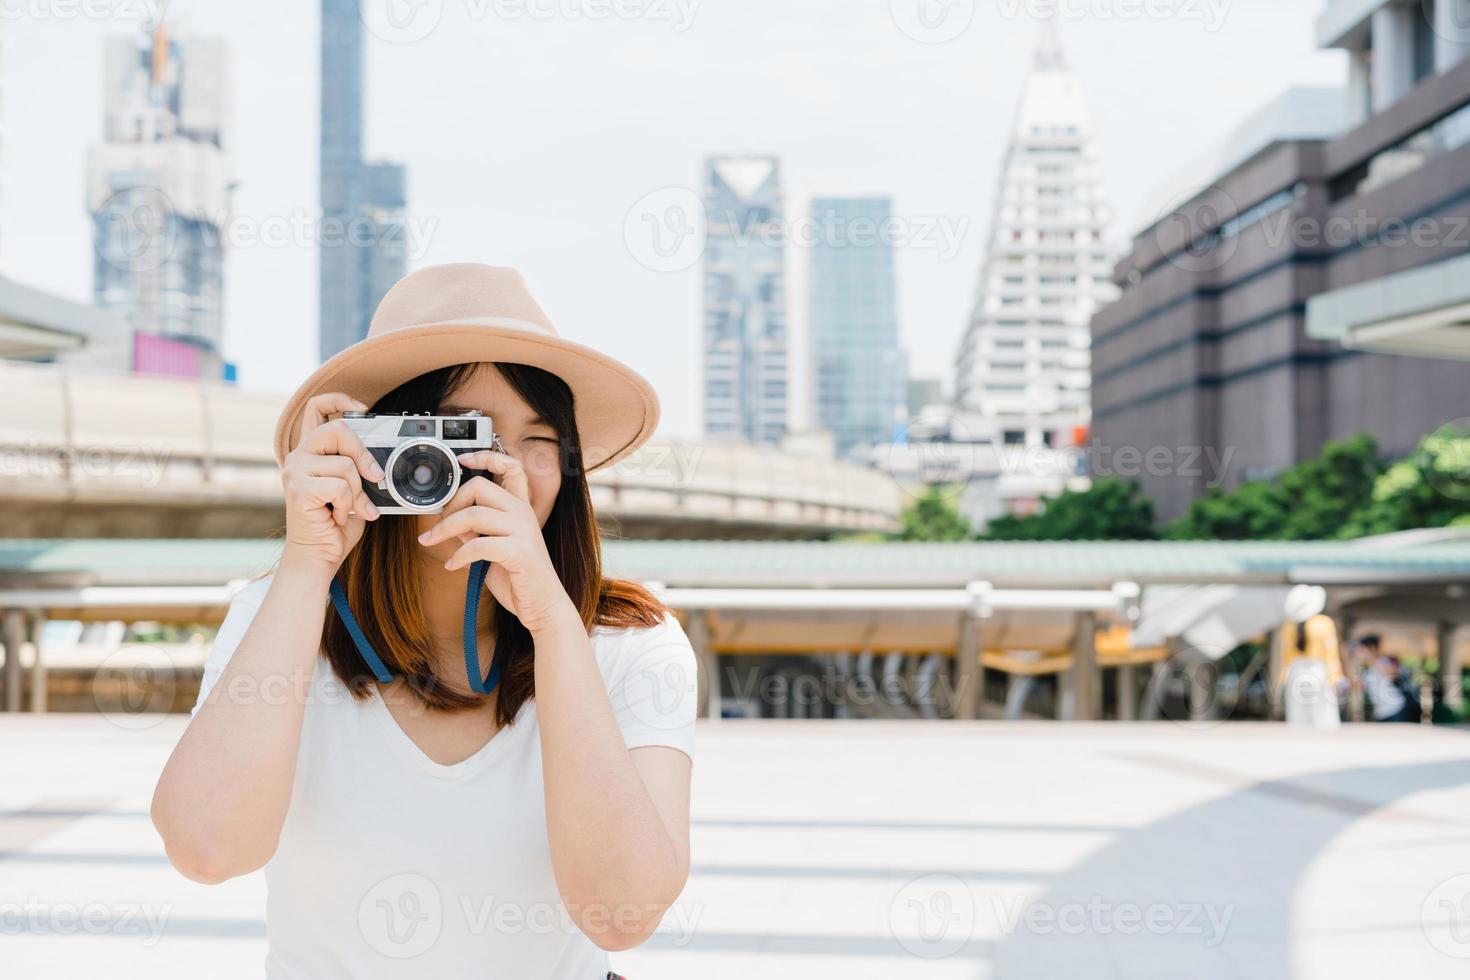 gelukkige mooie reiziger Aziatische vrouw draagt rugzak. jonge vrolijke aziatische vrouwen die camera gebruiken om foto's te maken tijdens stadstour, vrolijke emoties, goed humeur. vrouwen levensstijl buiten in stadsconcept. foto